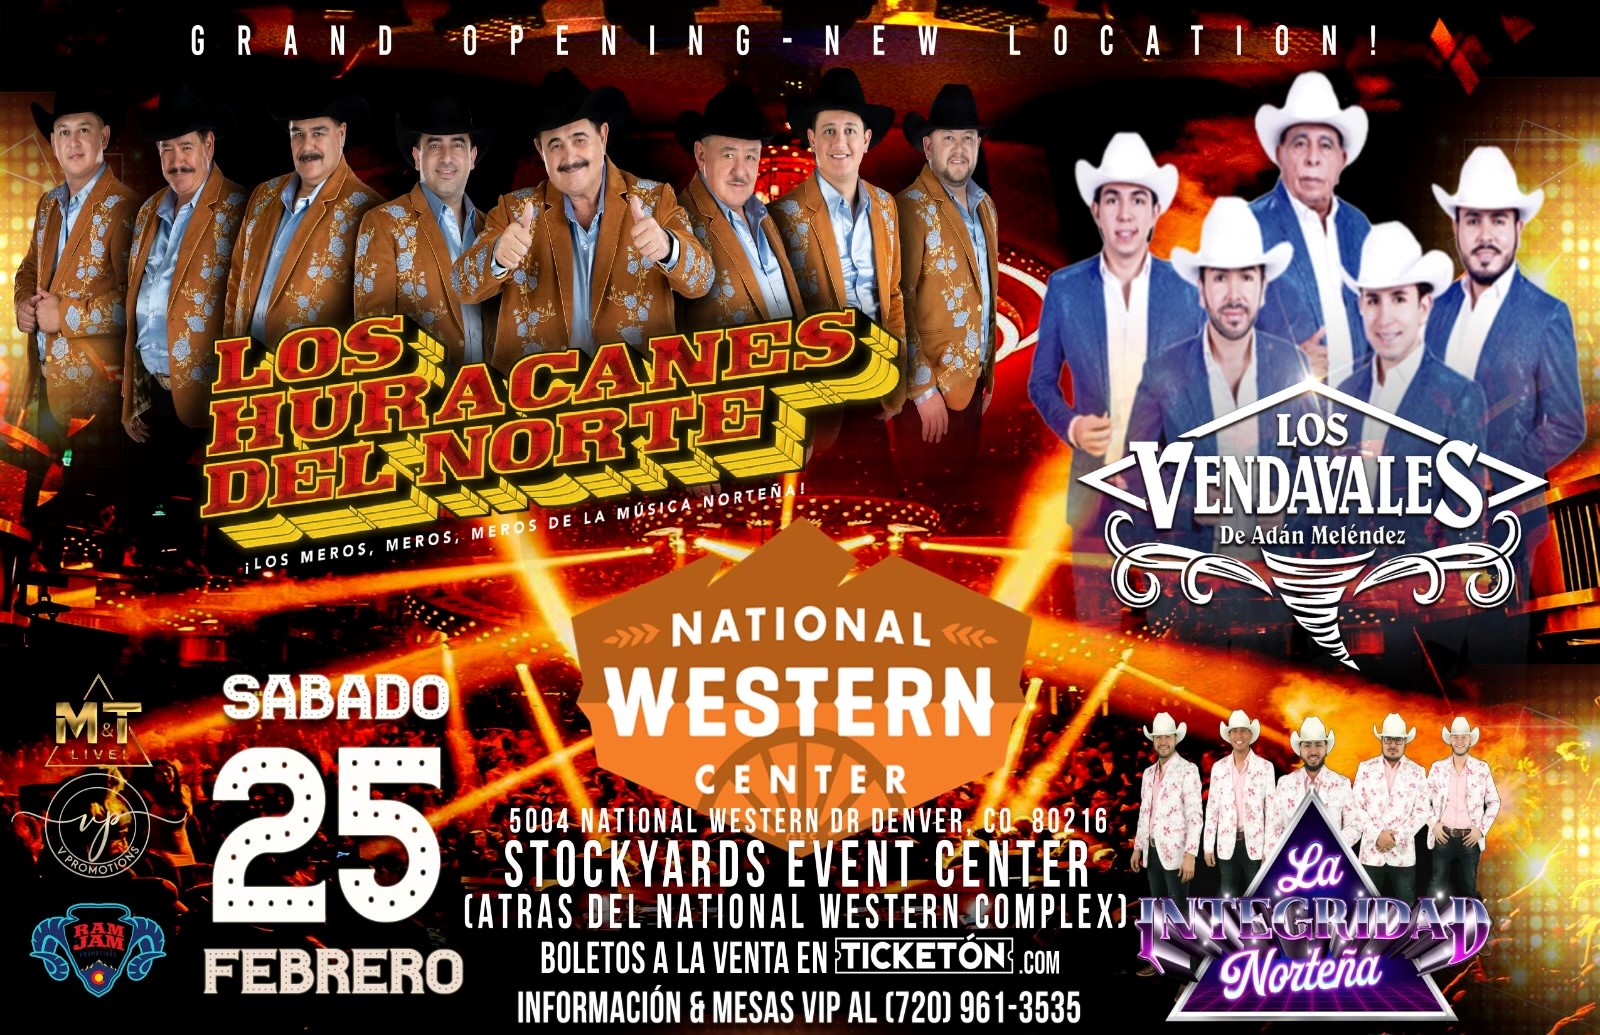 Concert Los Huracanes del Norte National Western Center